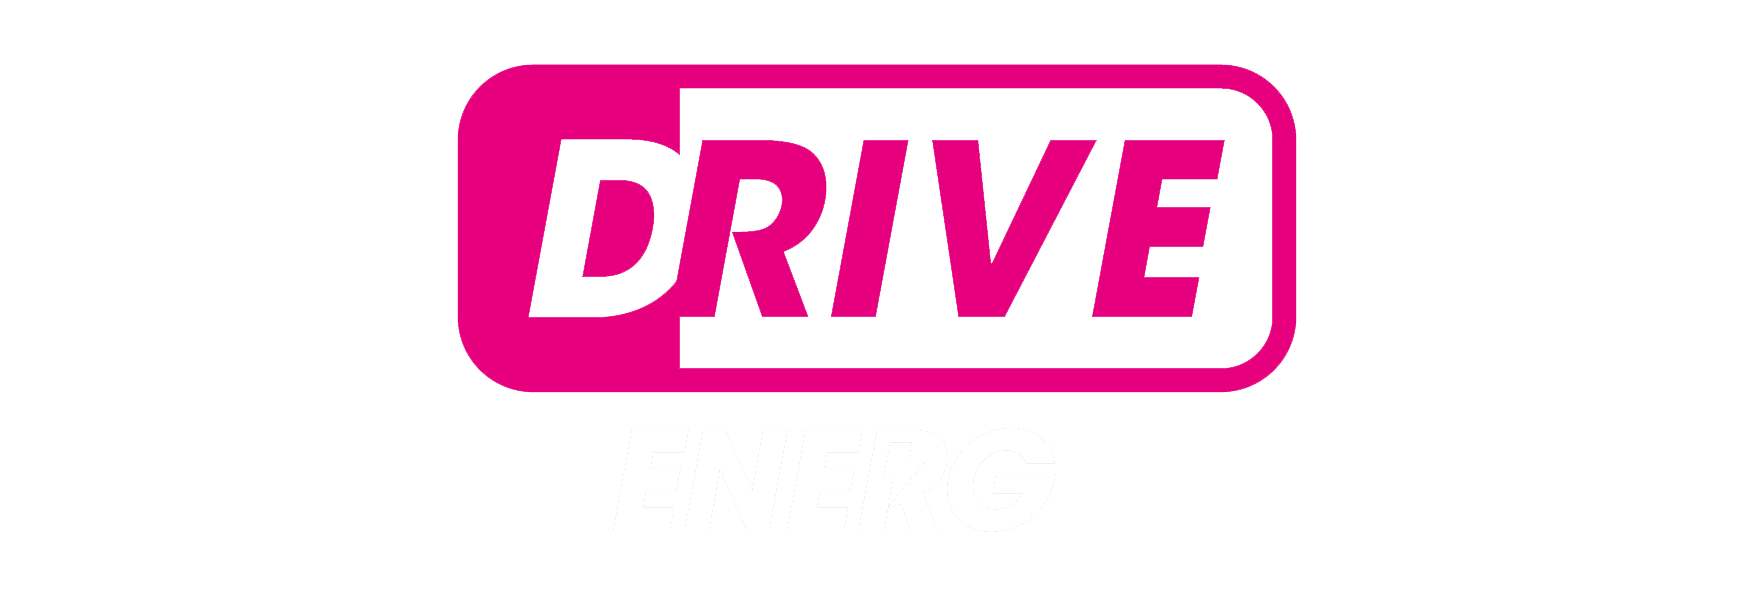 DriveEnergy.png